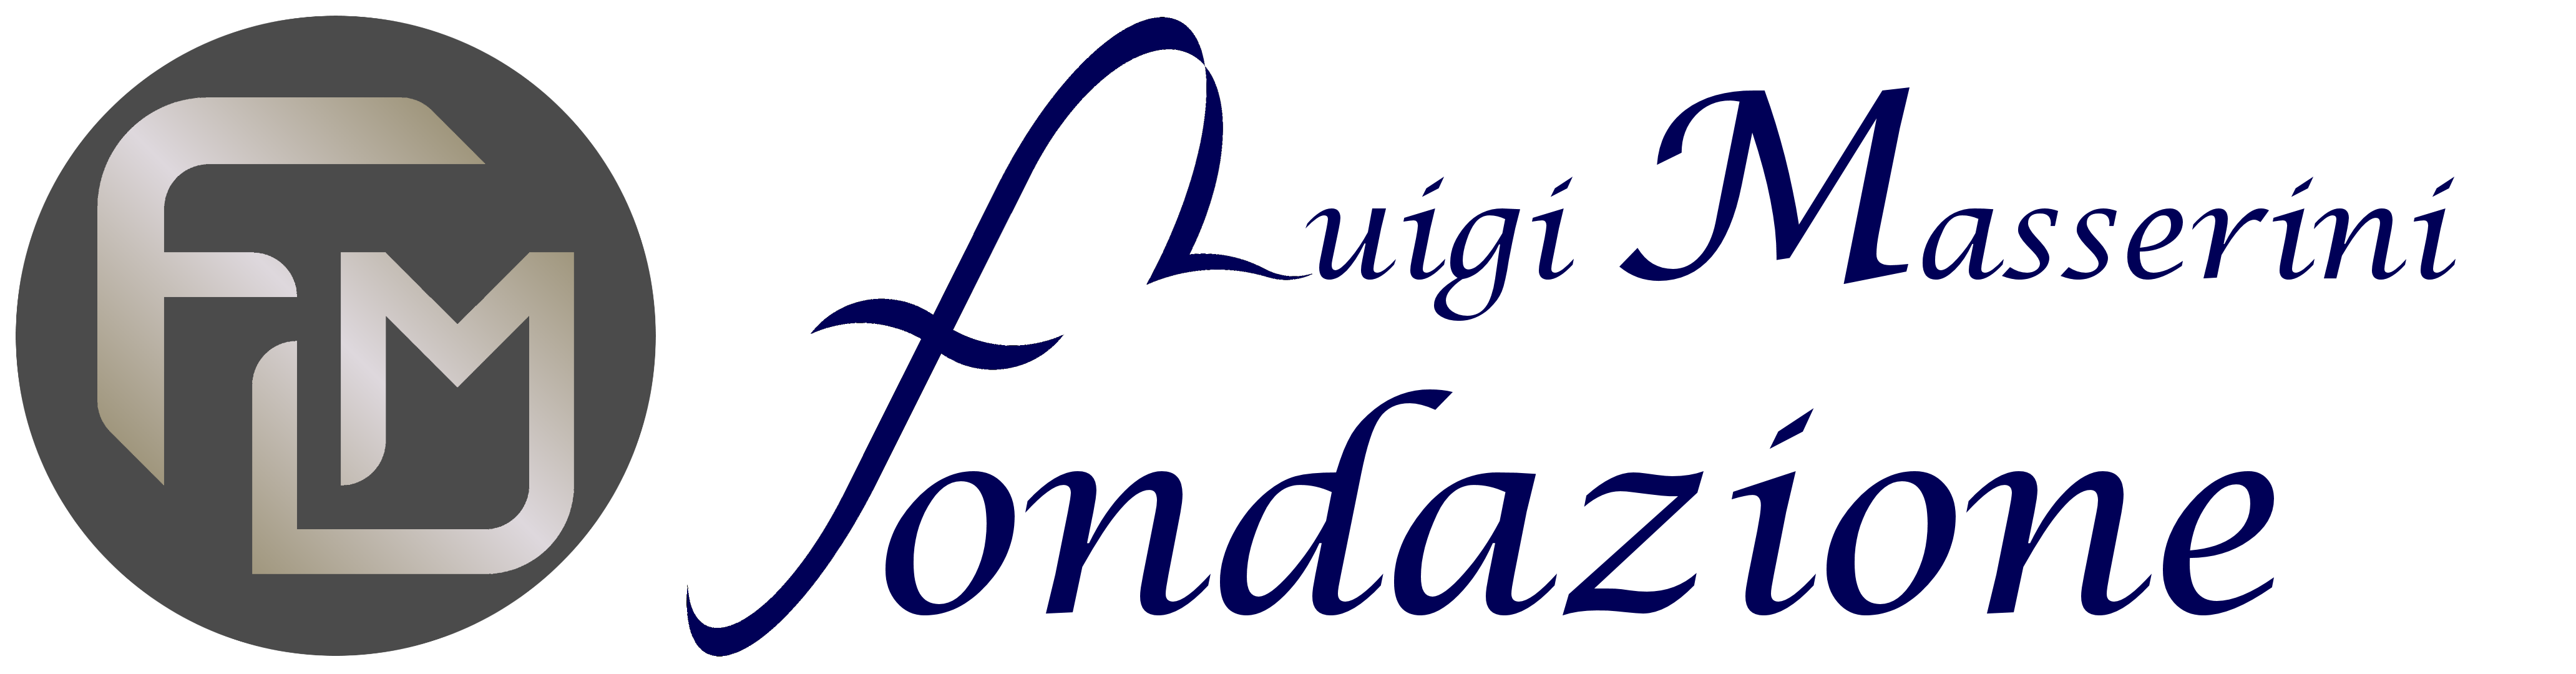 LOGO - Fondazione Luigi Masserini